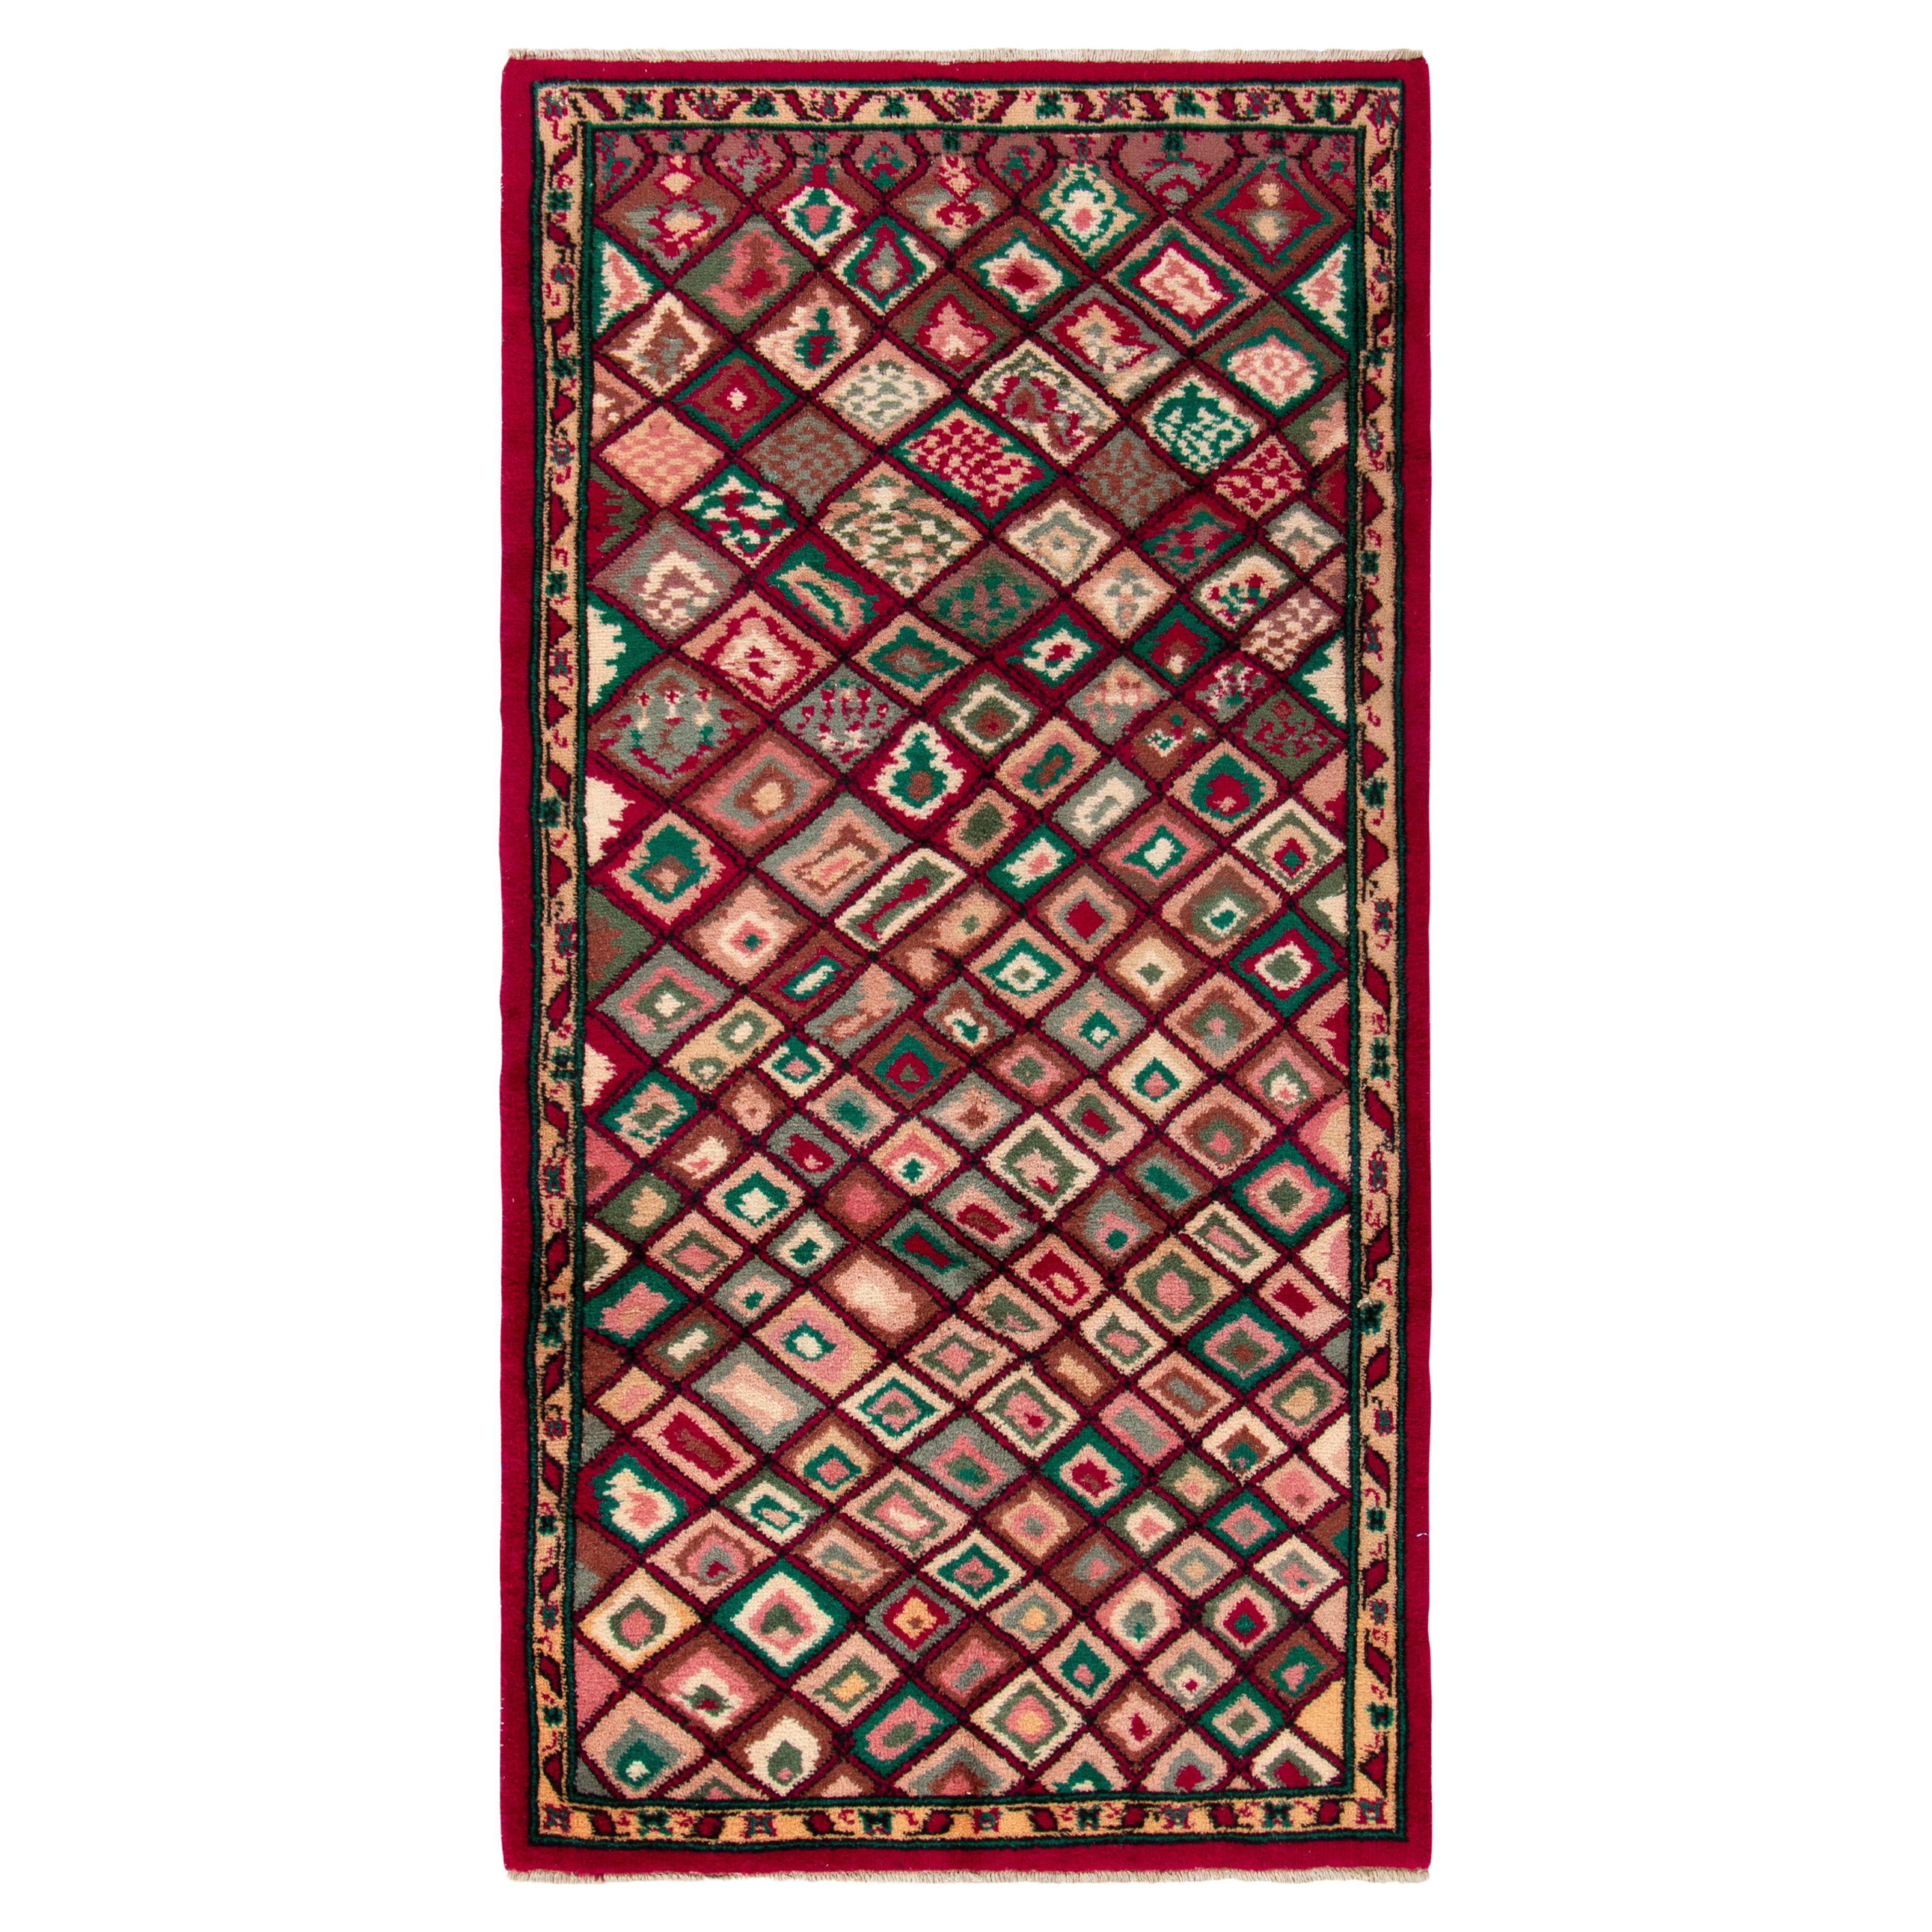 1960er Jahre Vintage Distressed Teppich in Rot & Grün mit geometrischem Muster von Teppich & Kelim